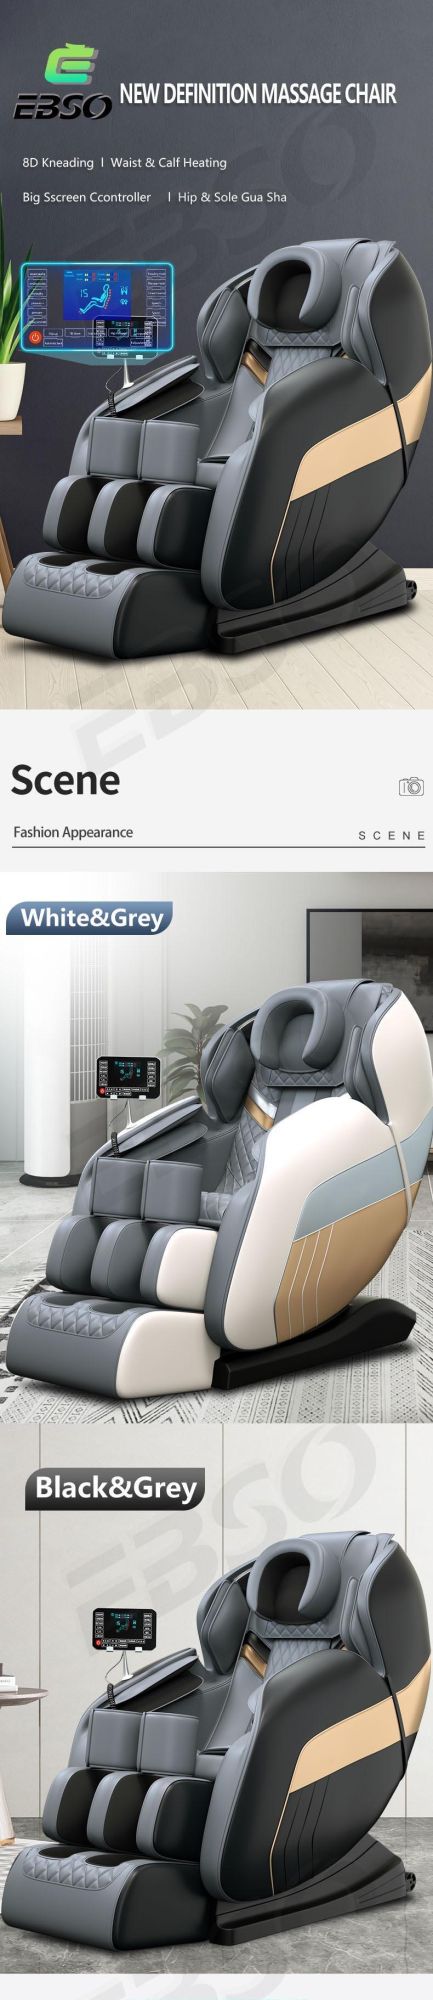 Luxury Massage Chair Zero Gravity Luxury with Blutetooth Speaker